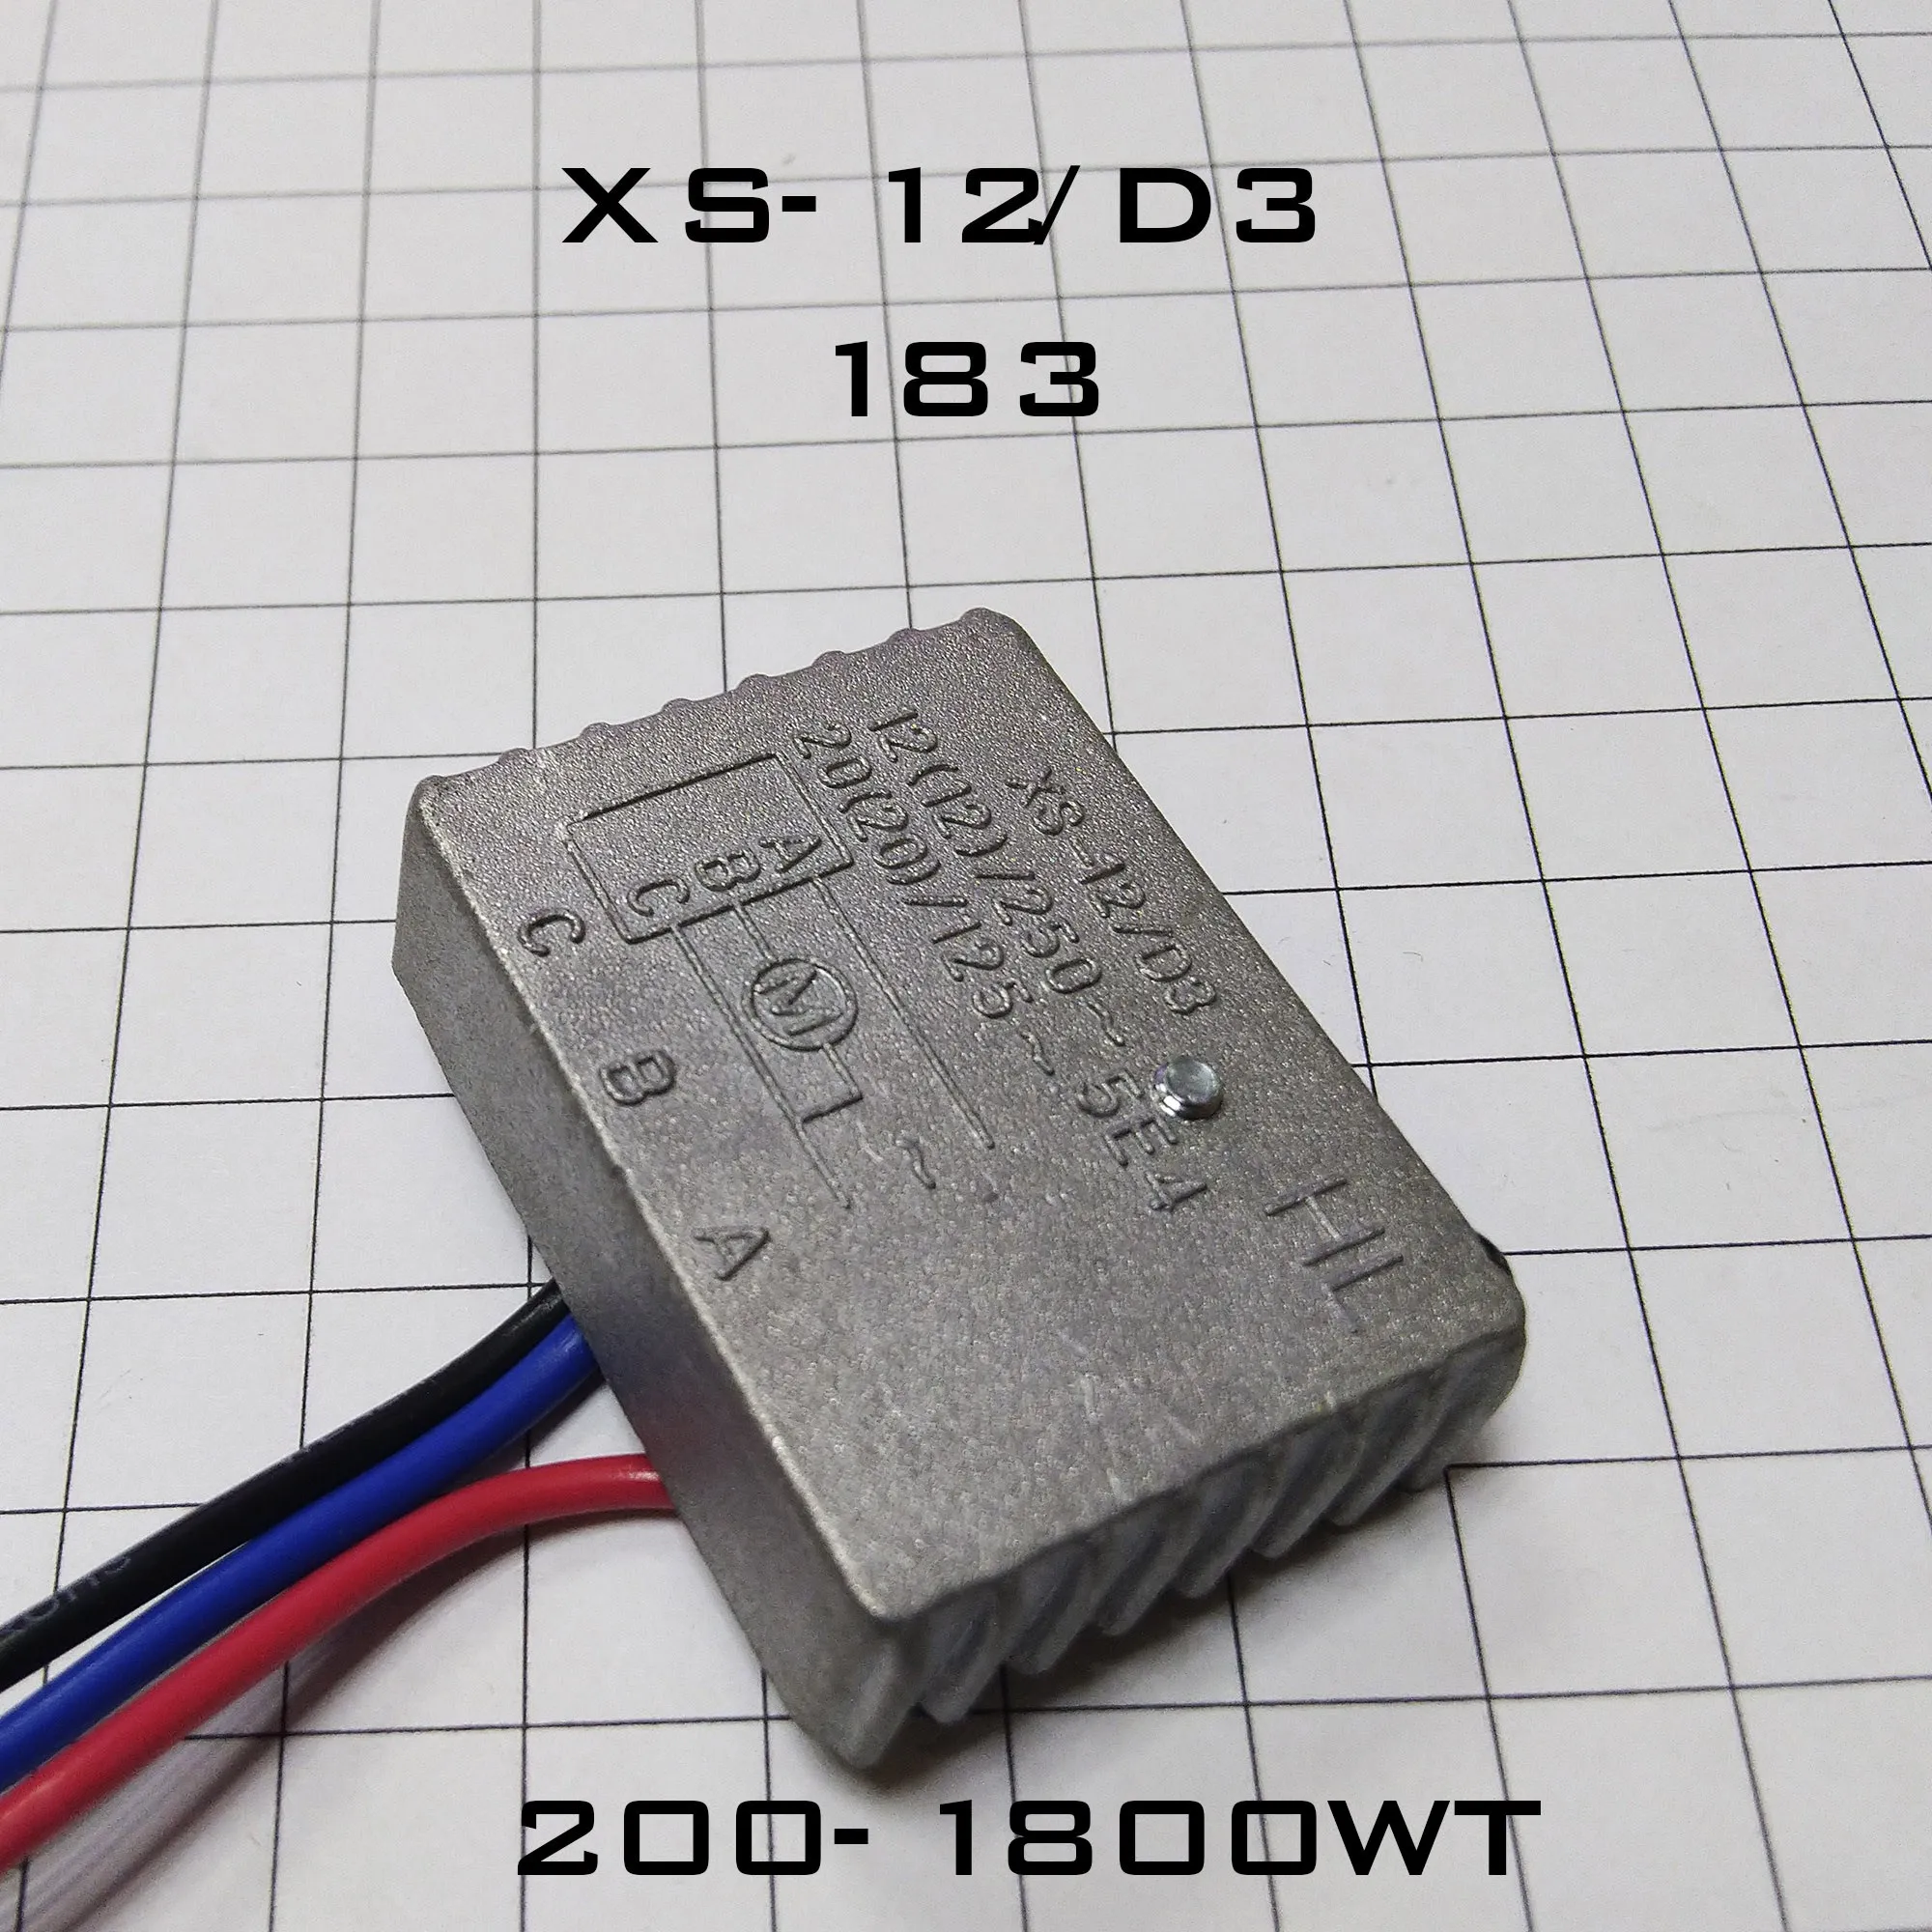 183 Плавный пуск 200Вт 1800Вт  XS 12/DS|Электротовары|   | АлиЭкспресс